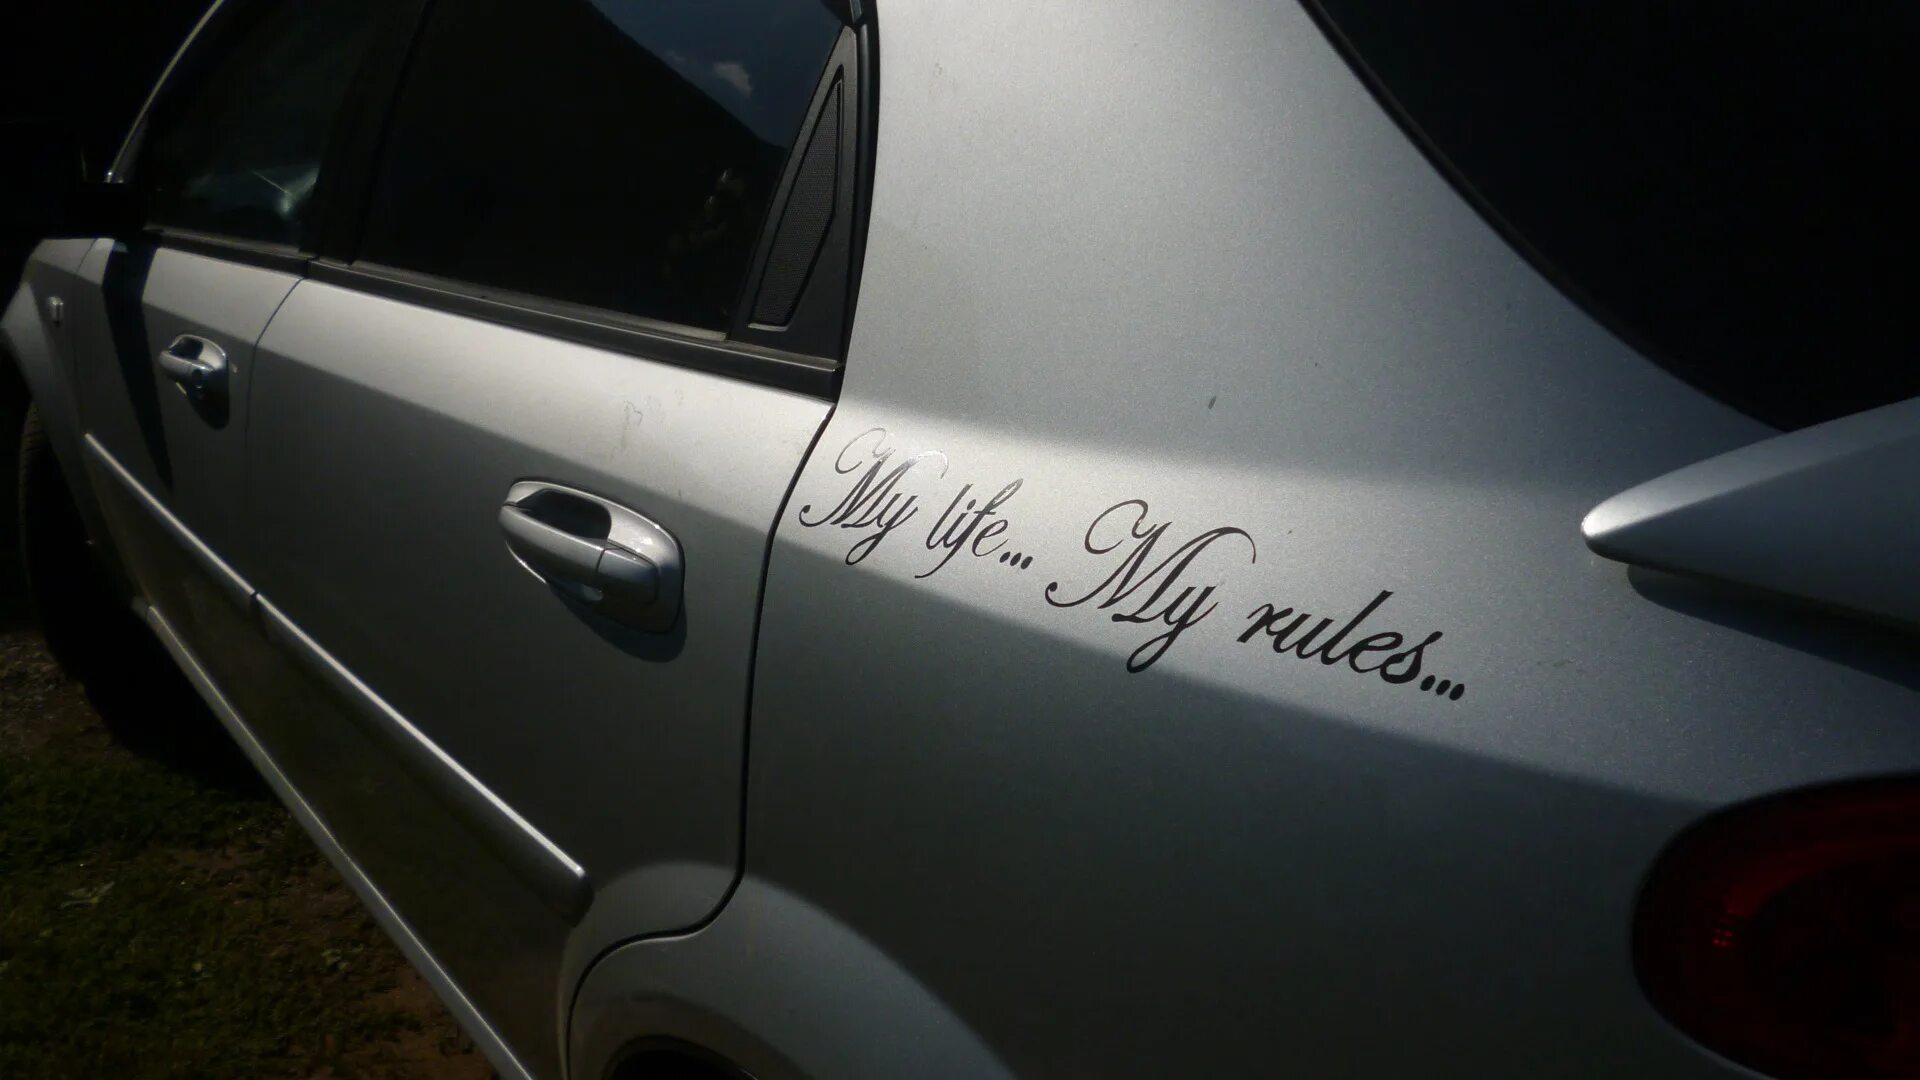 My Life my Rules на машине. Наклейка на авто моя жизнь Мои правила. My Life my Rules наклейка на машину. My Life my Rules надпись на машине.